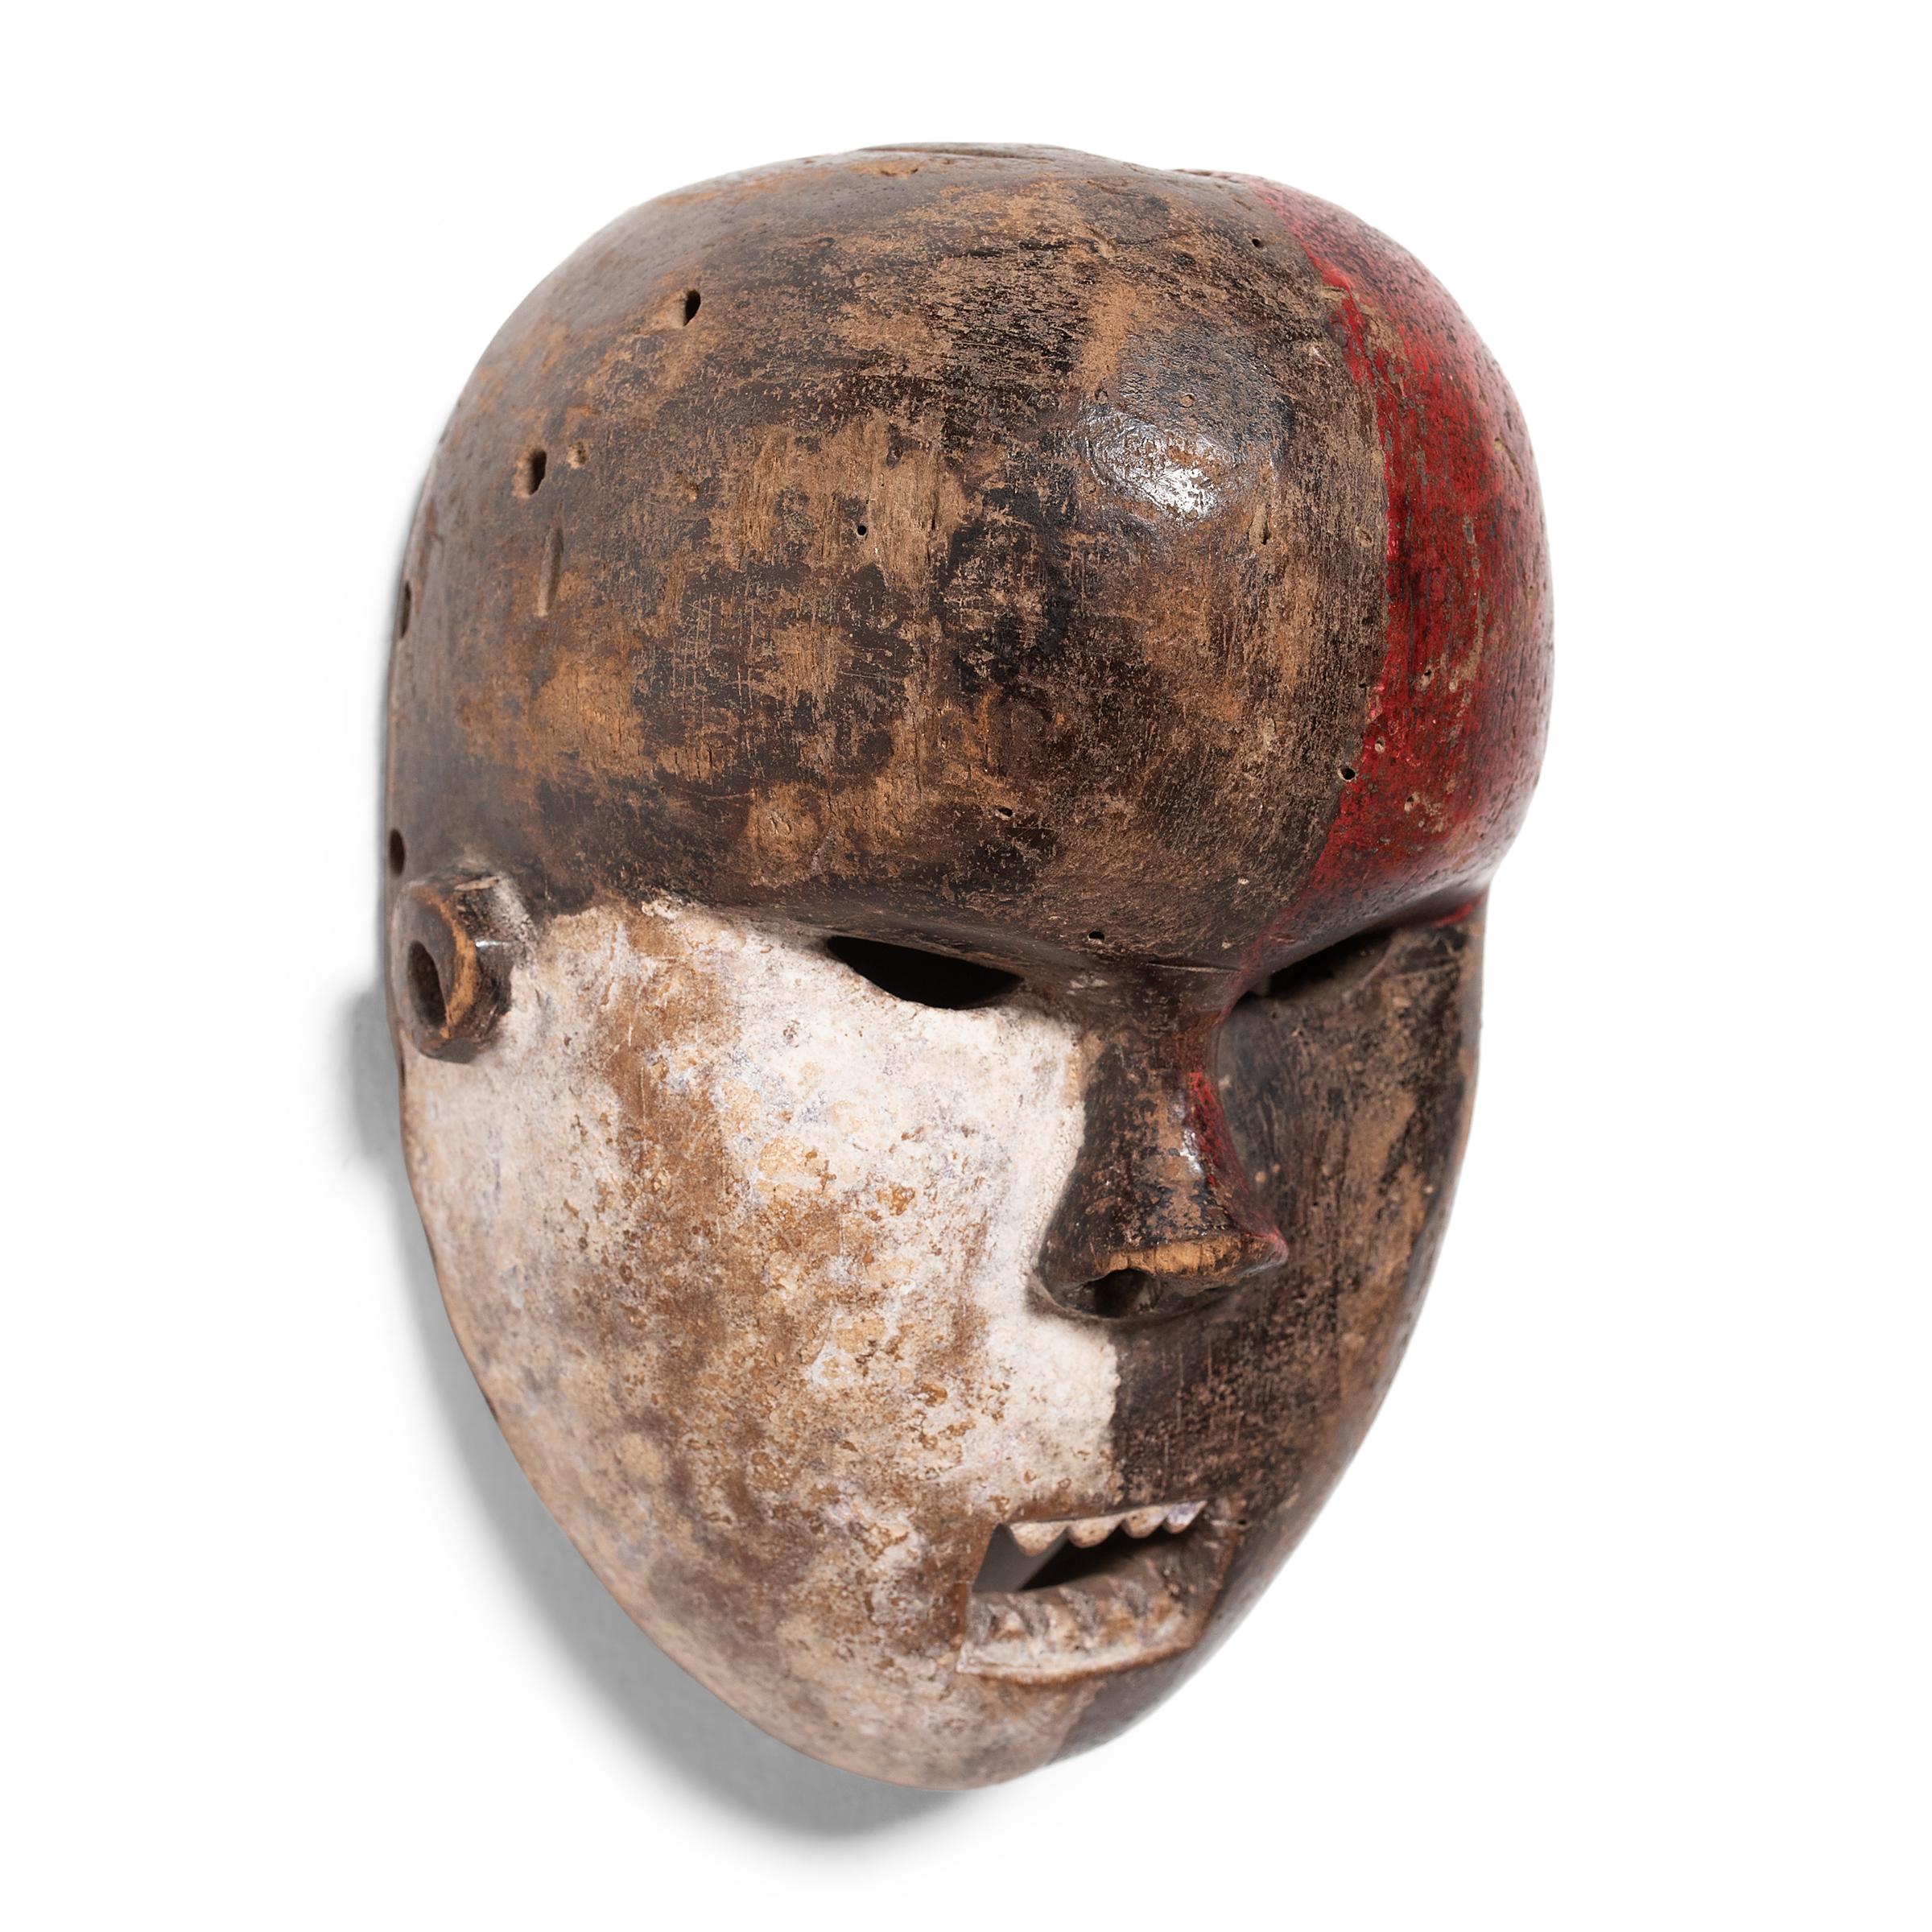 Divisé en tons contrastés, ce masque cérémoniel africain est lié au peuple Salampasu de l'ethnie Bantu situé principalement en République démocratique du Congo. Les masques Salampasu faisaient partie intégrante de la société guerrière masculine dont